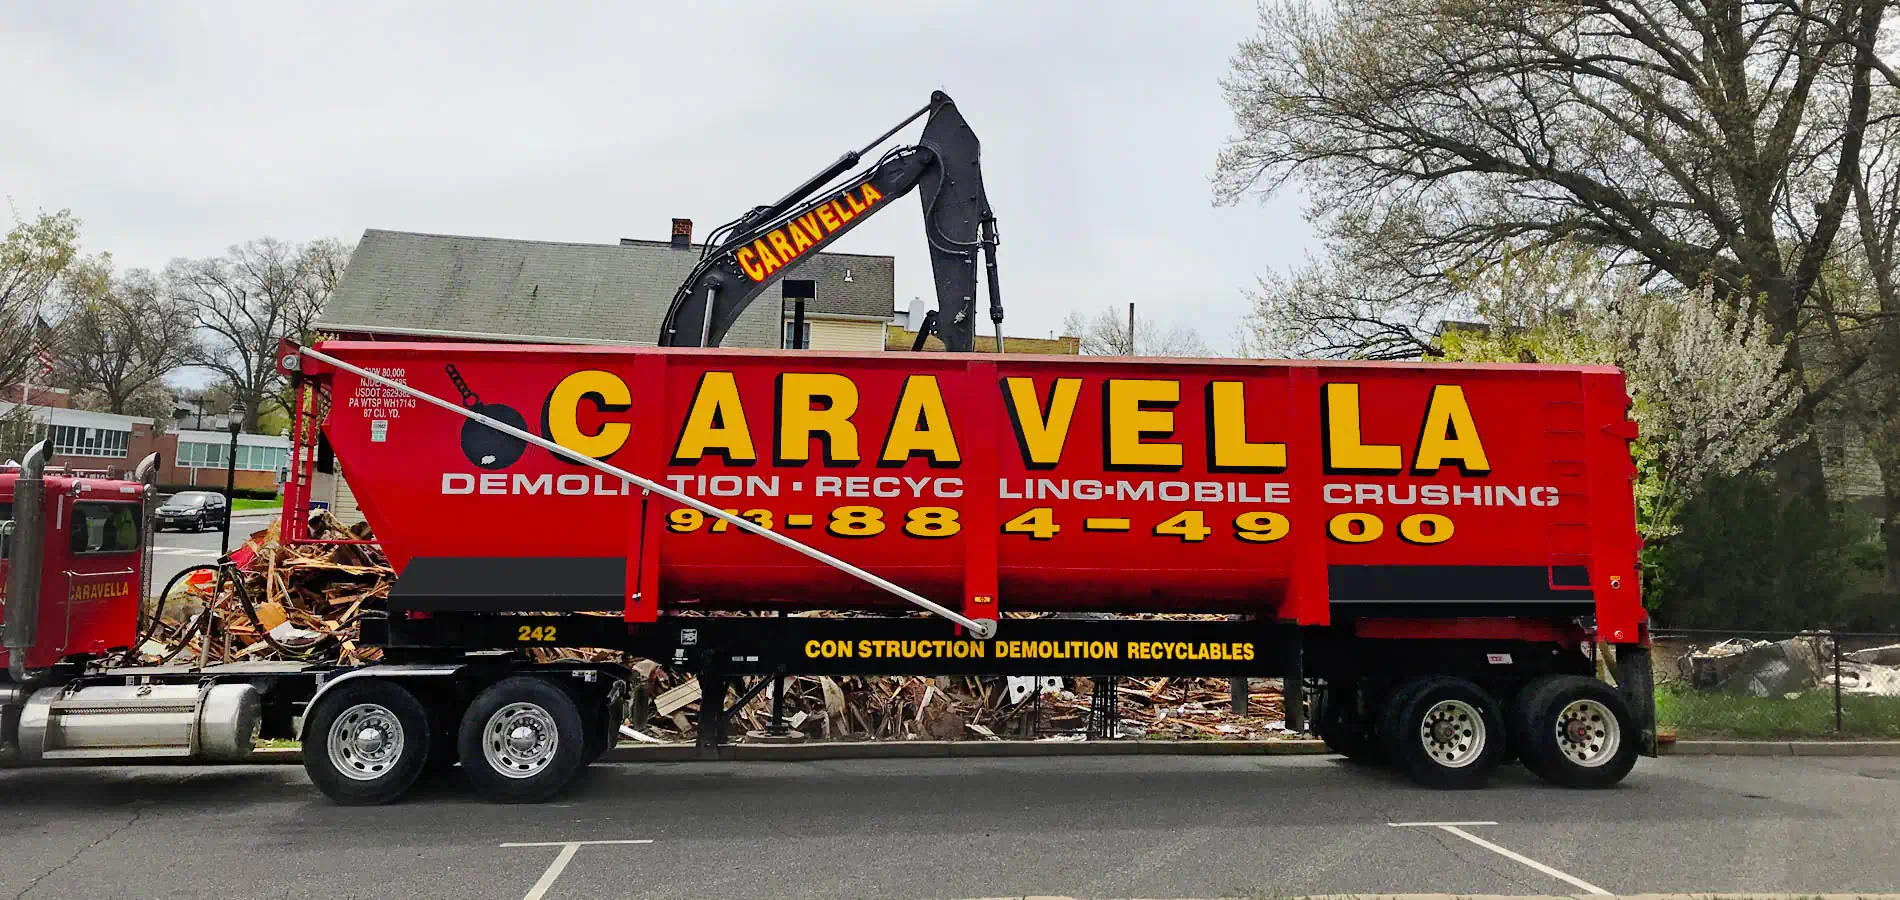 Demolition Services in Newton, NJ 07860 | Caravella Demolition